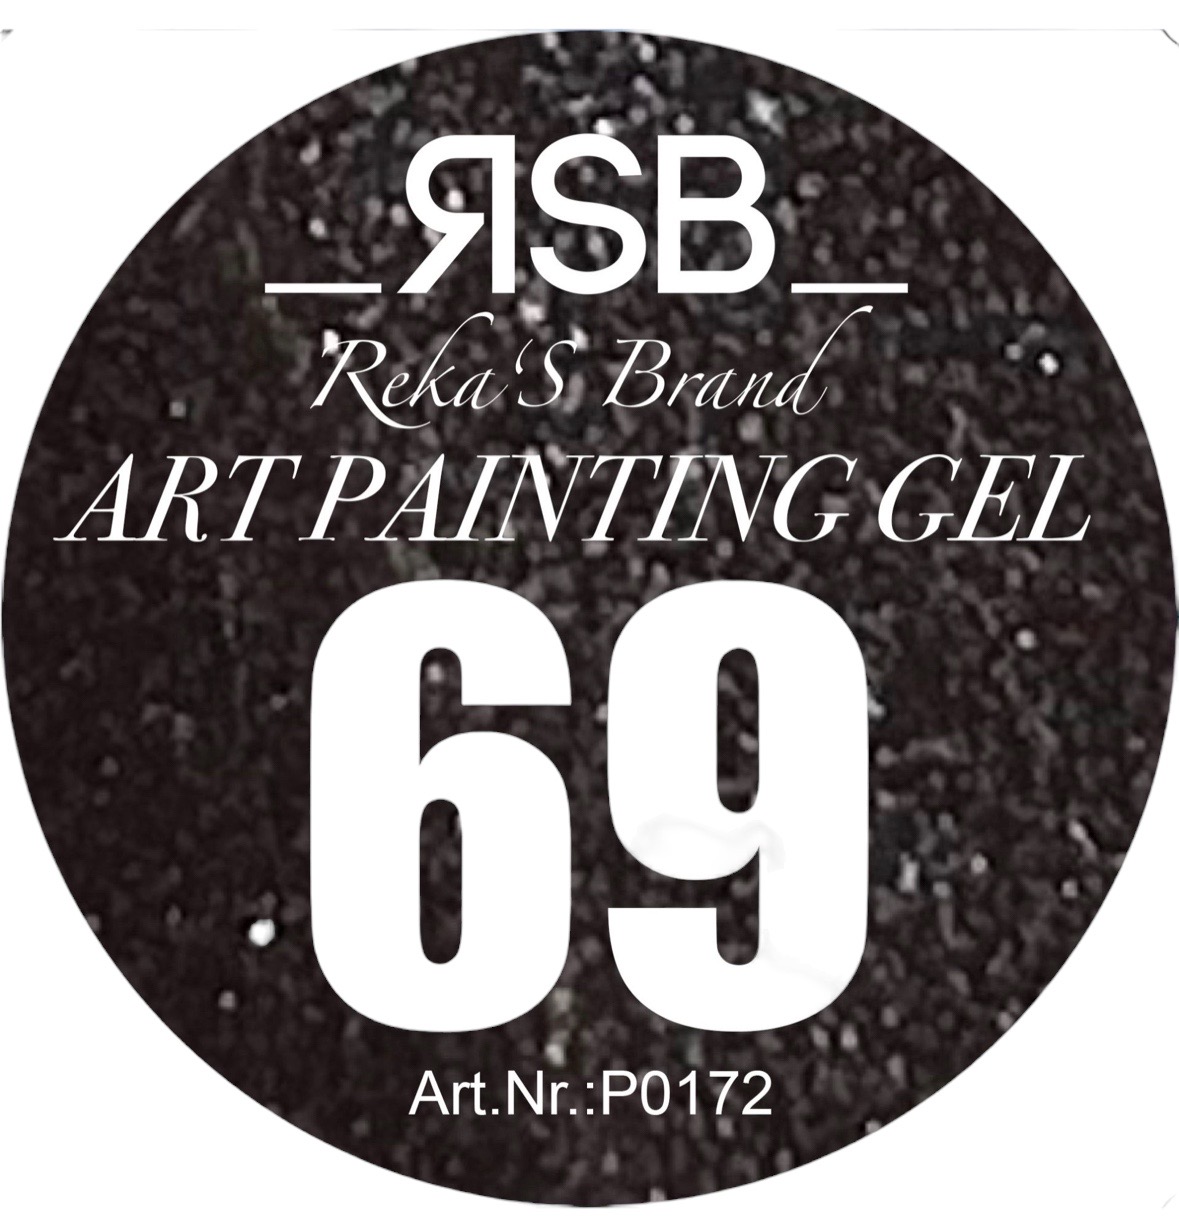 ART PAINTING GEL 69